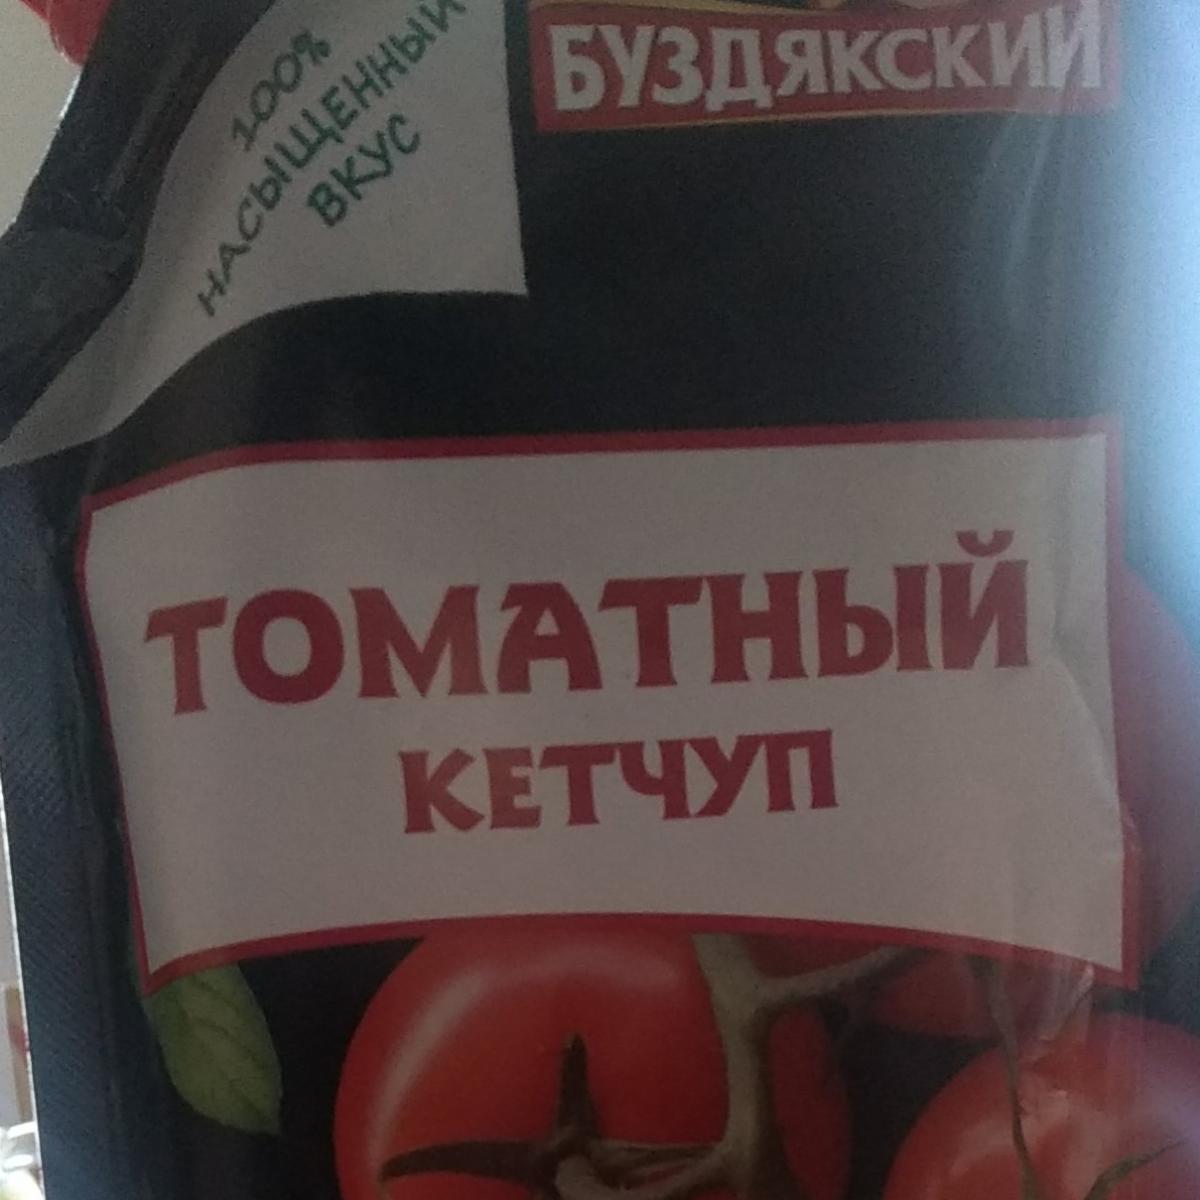 Фото - томатный кетчуп первой категории Буздякский